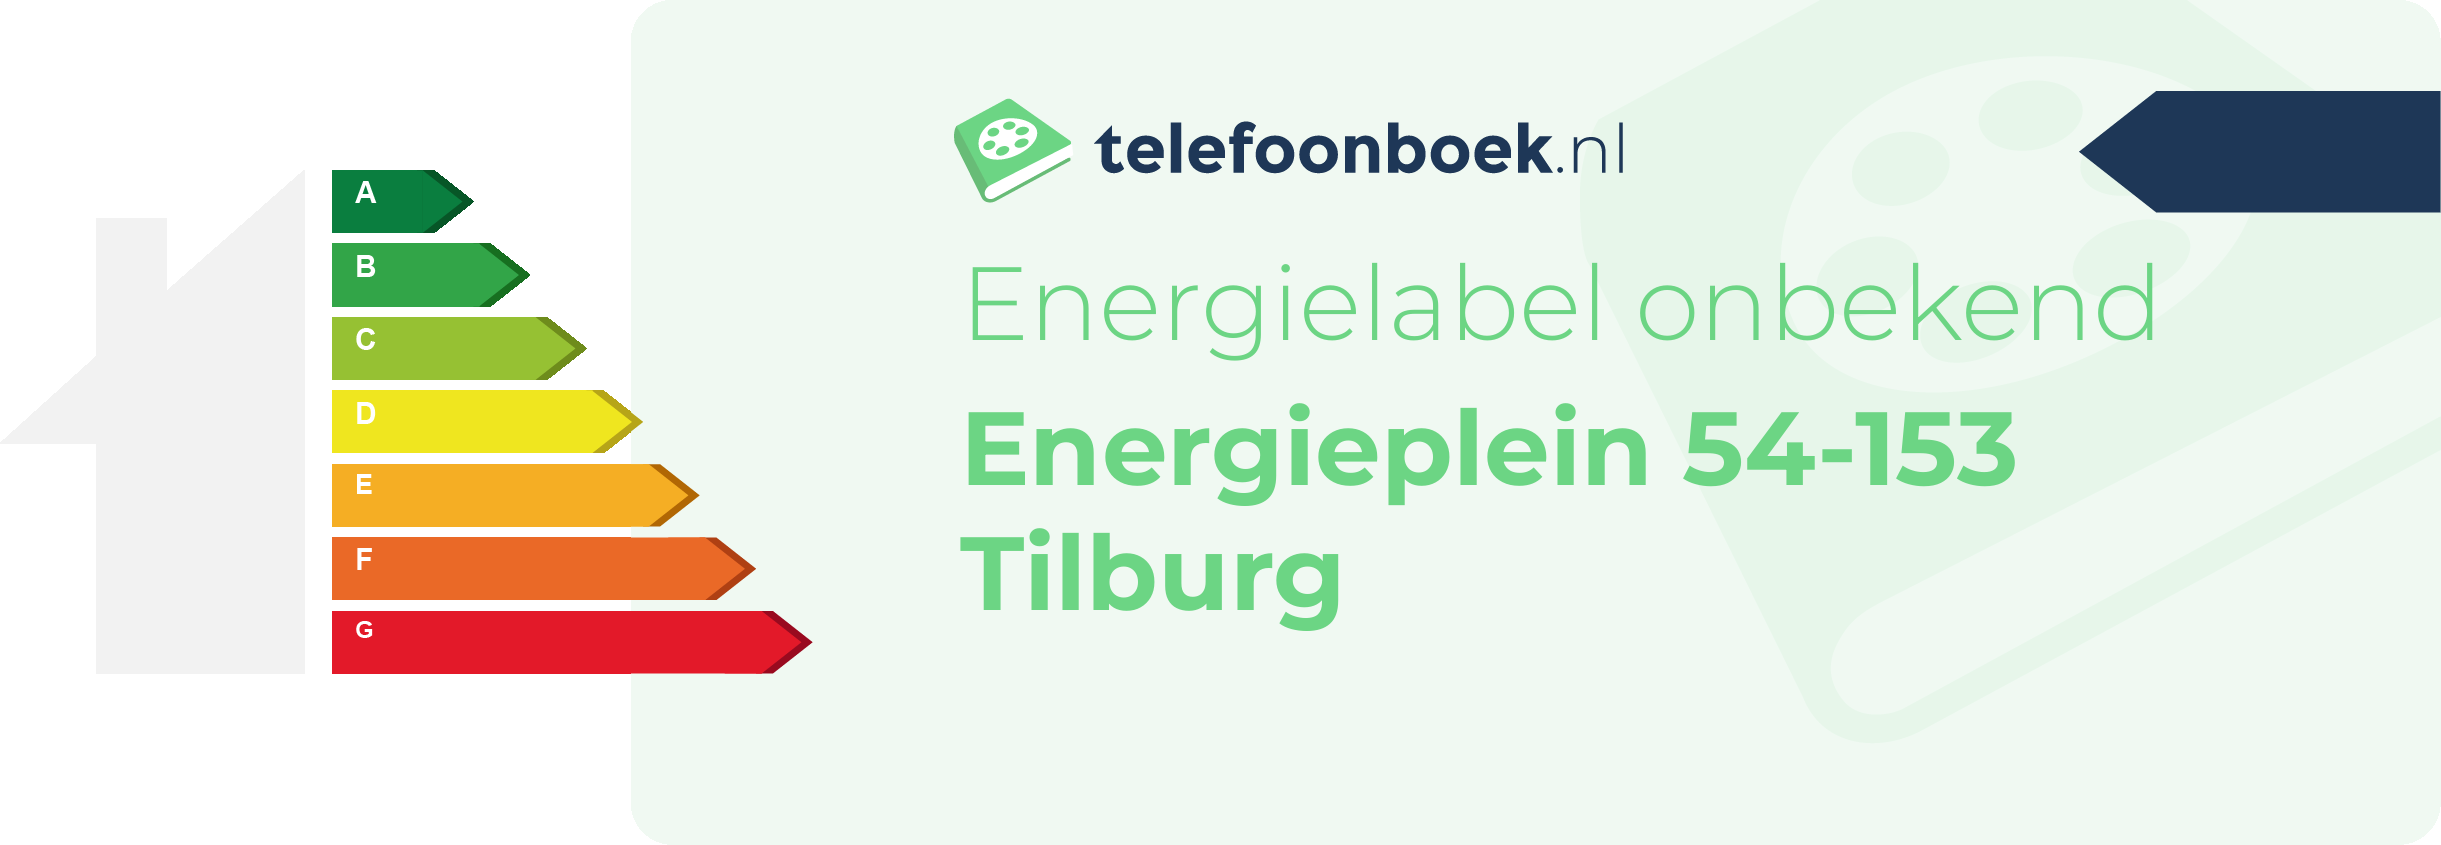 Energielabel Energieplein 54-153 Tilburg